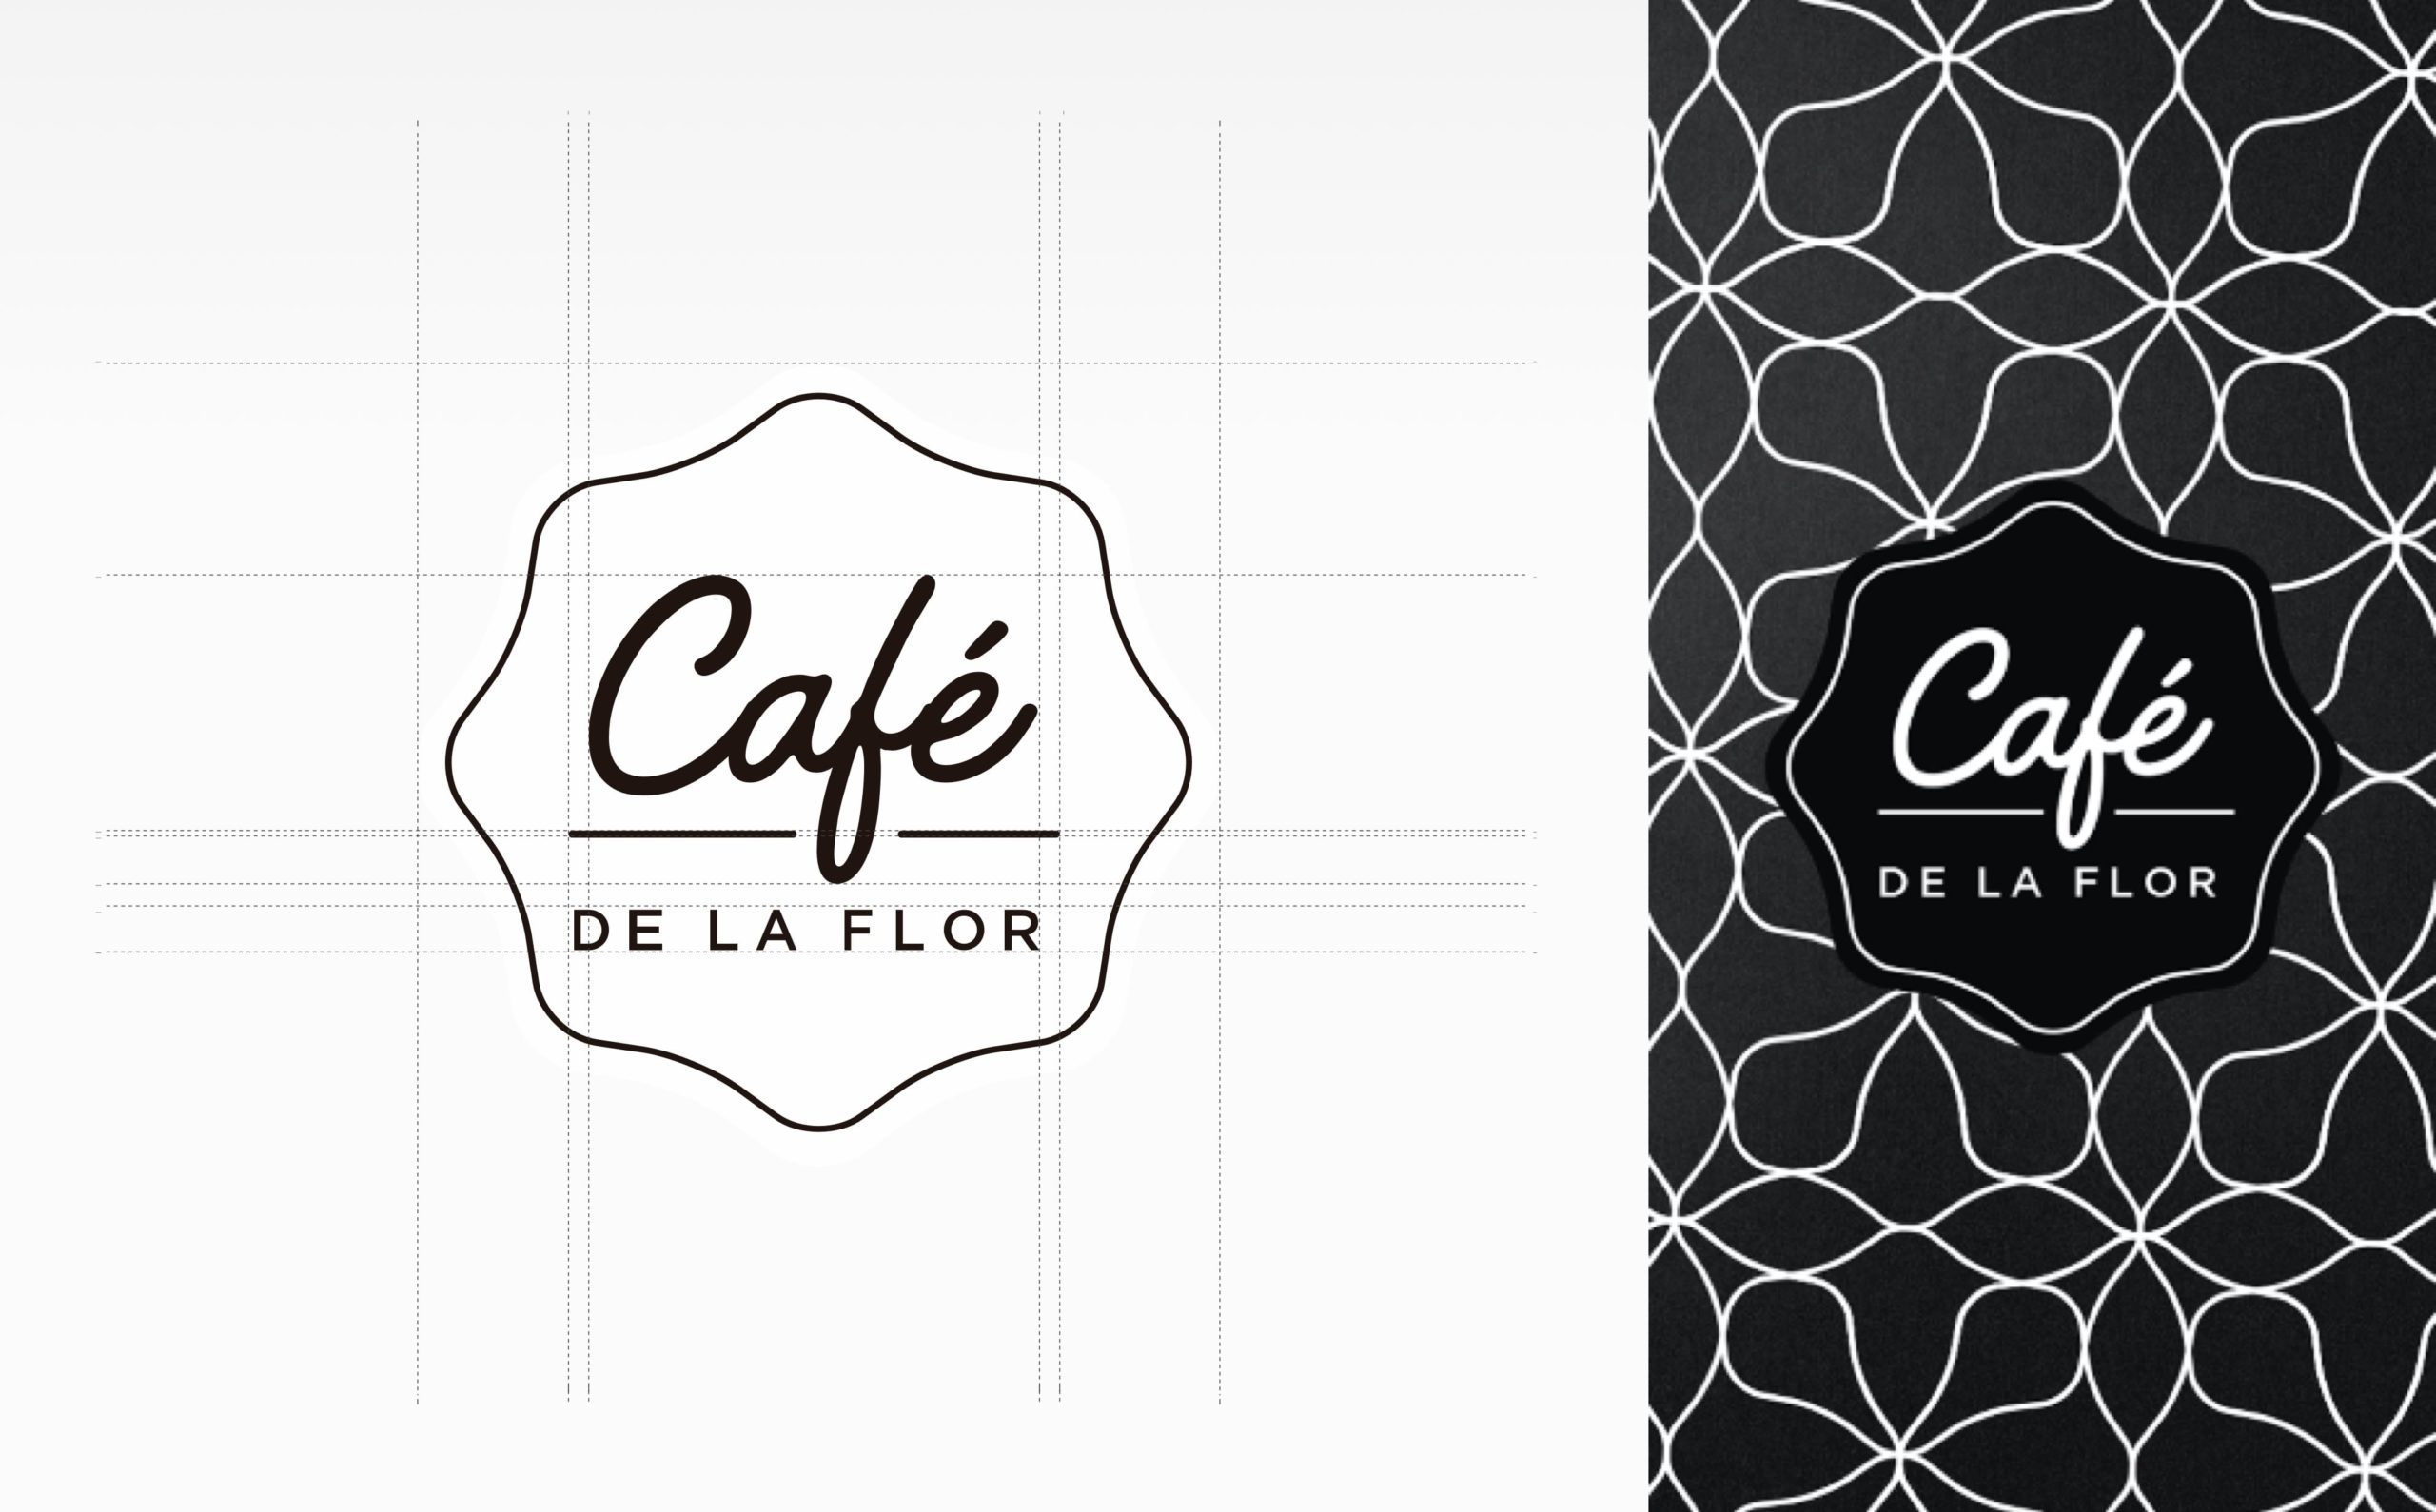 Cafe de la flor